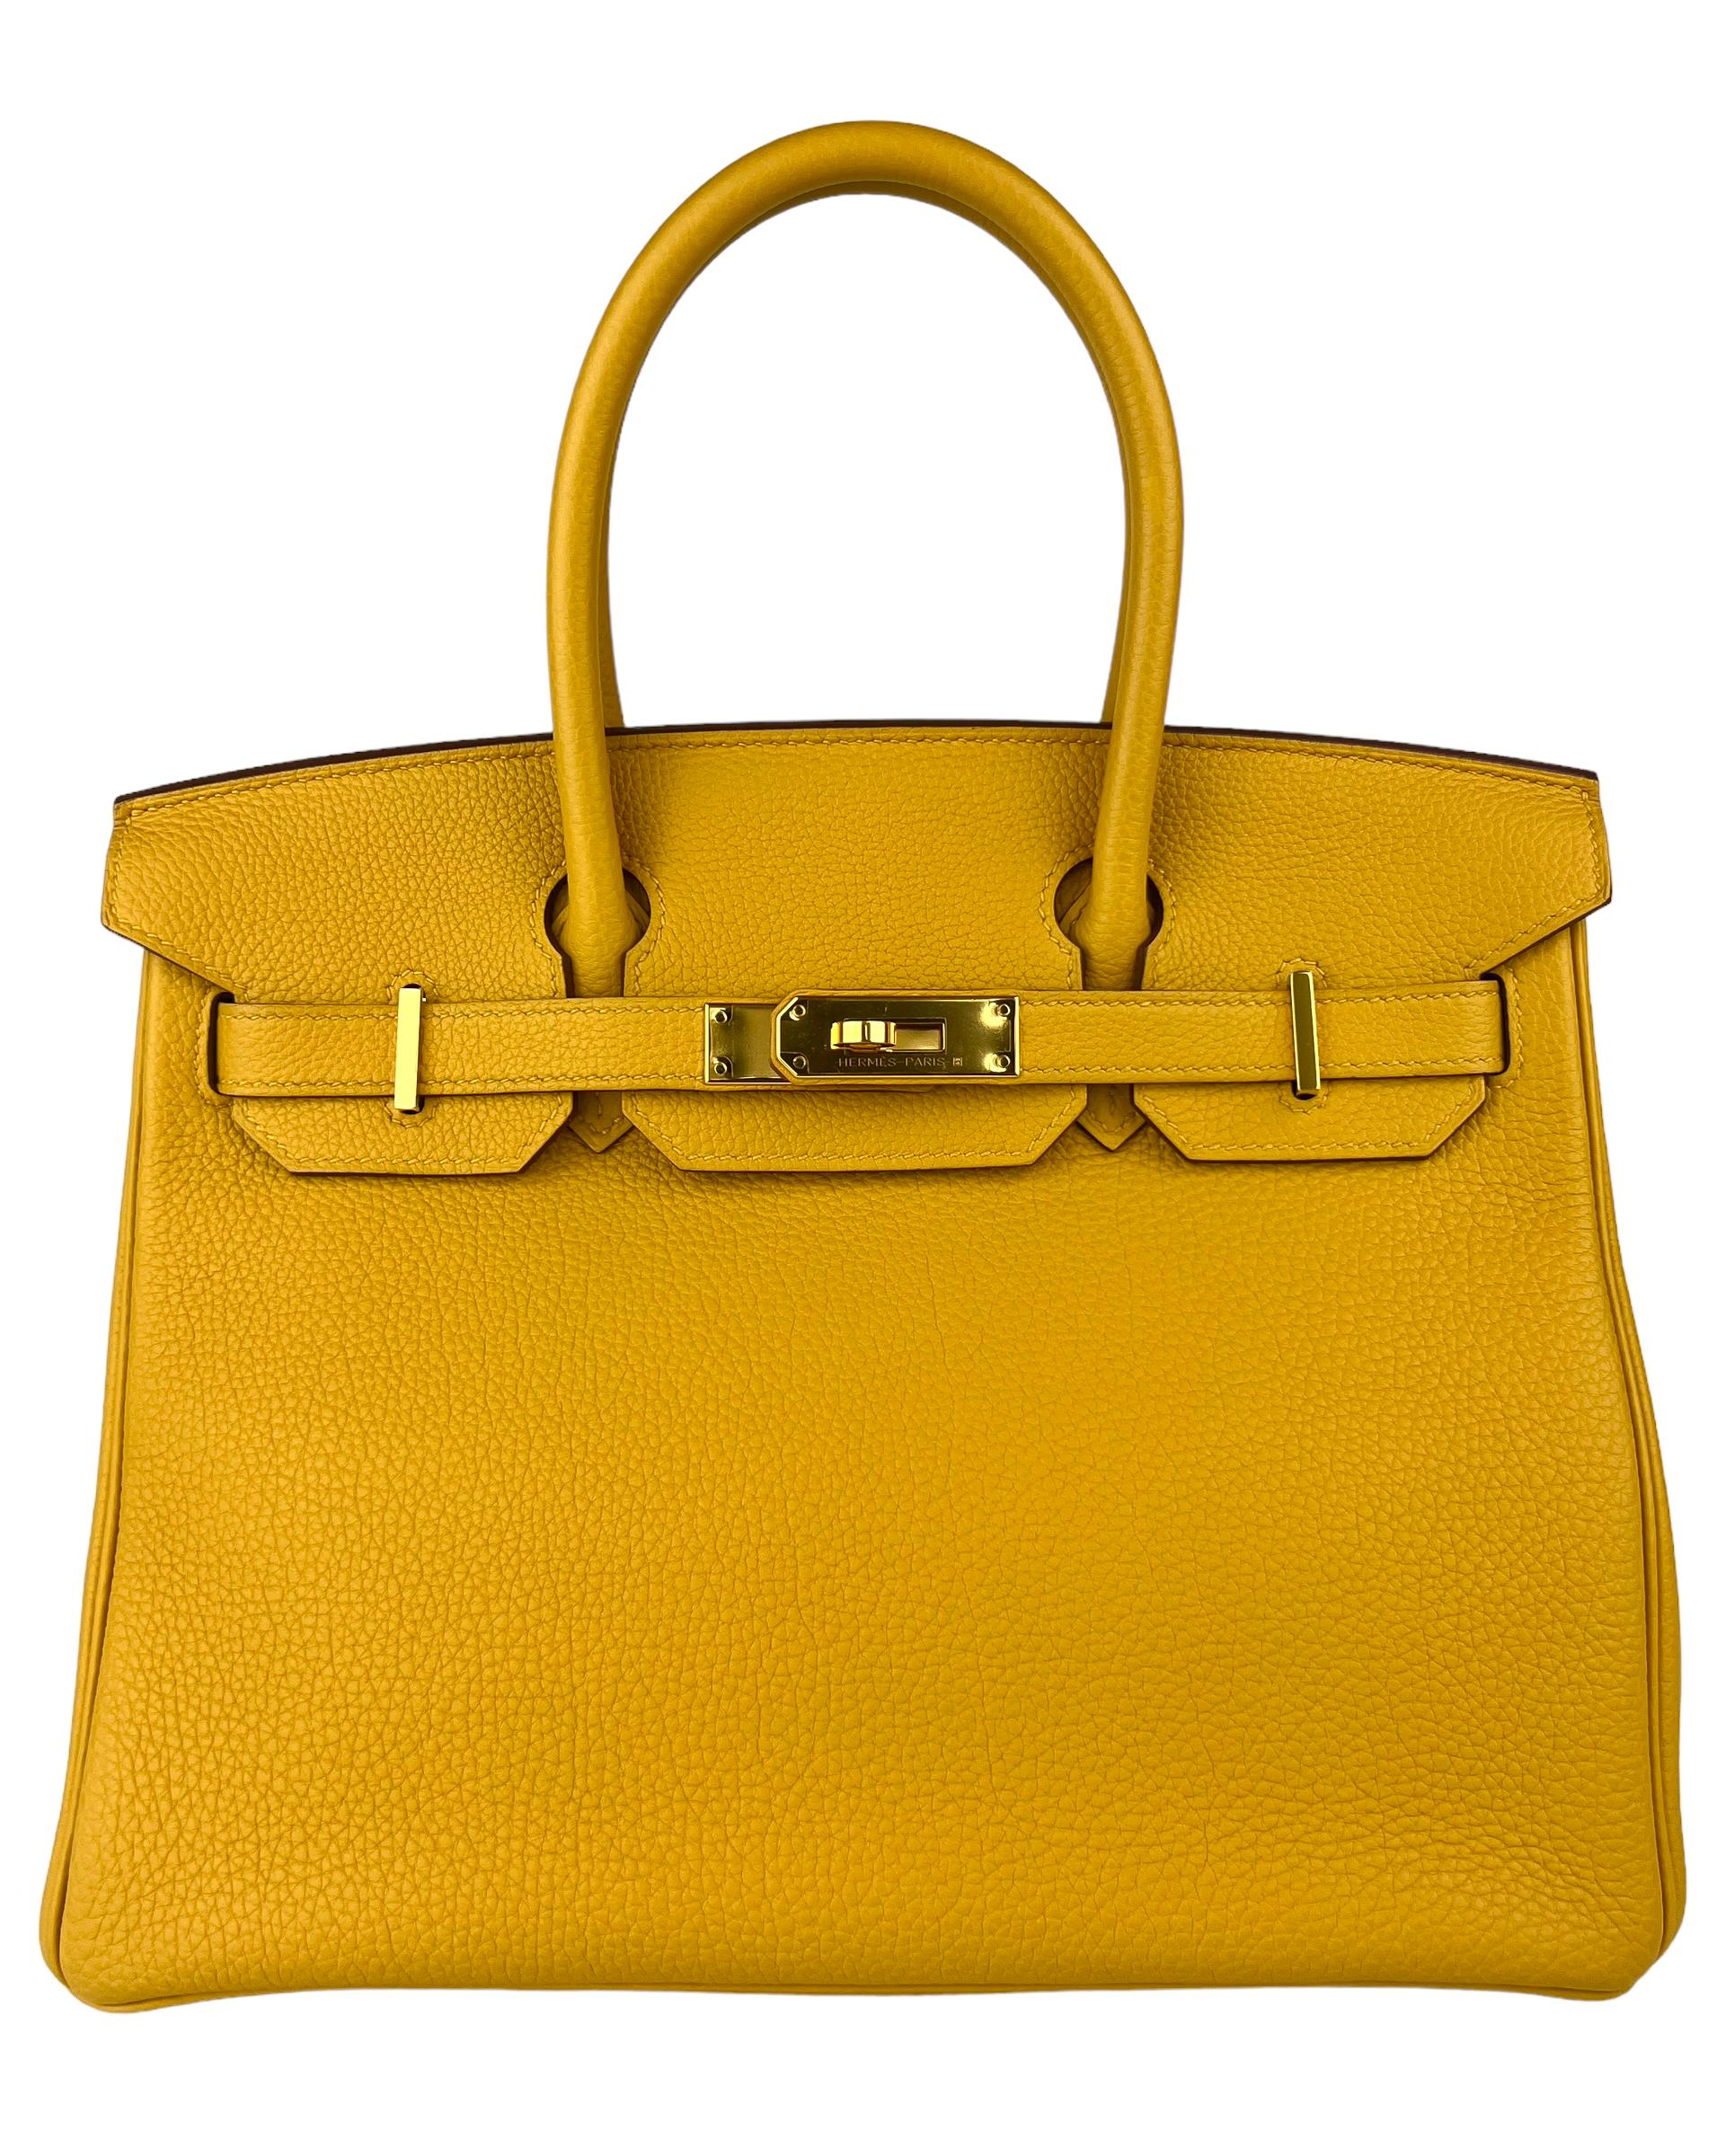 Absolument magnifique Rare Hermes Birkin 30 Jaune Ambre Yellow Leather complimented by Gold Hardware. Condit avec plastique sur la quincaillerie. 

Achetez en toute confiance auprès de Lux Addicts. Authenticité garantie ! 

N'oubliez pas qu'il